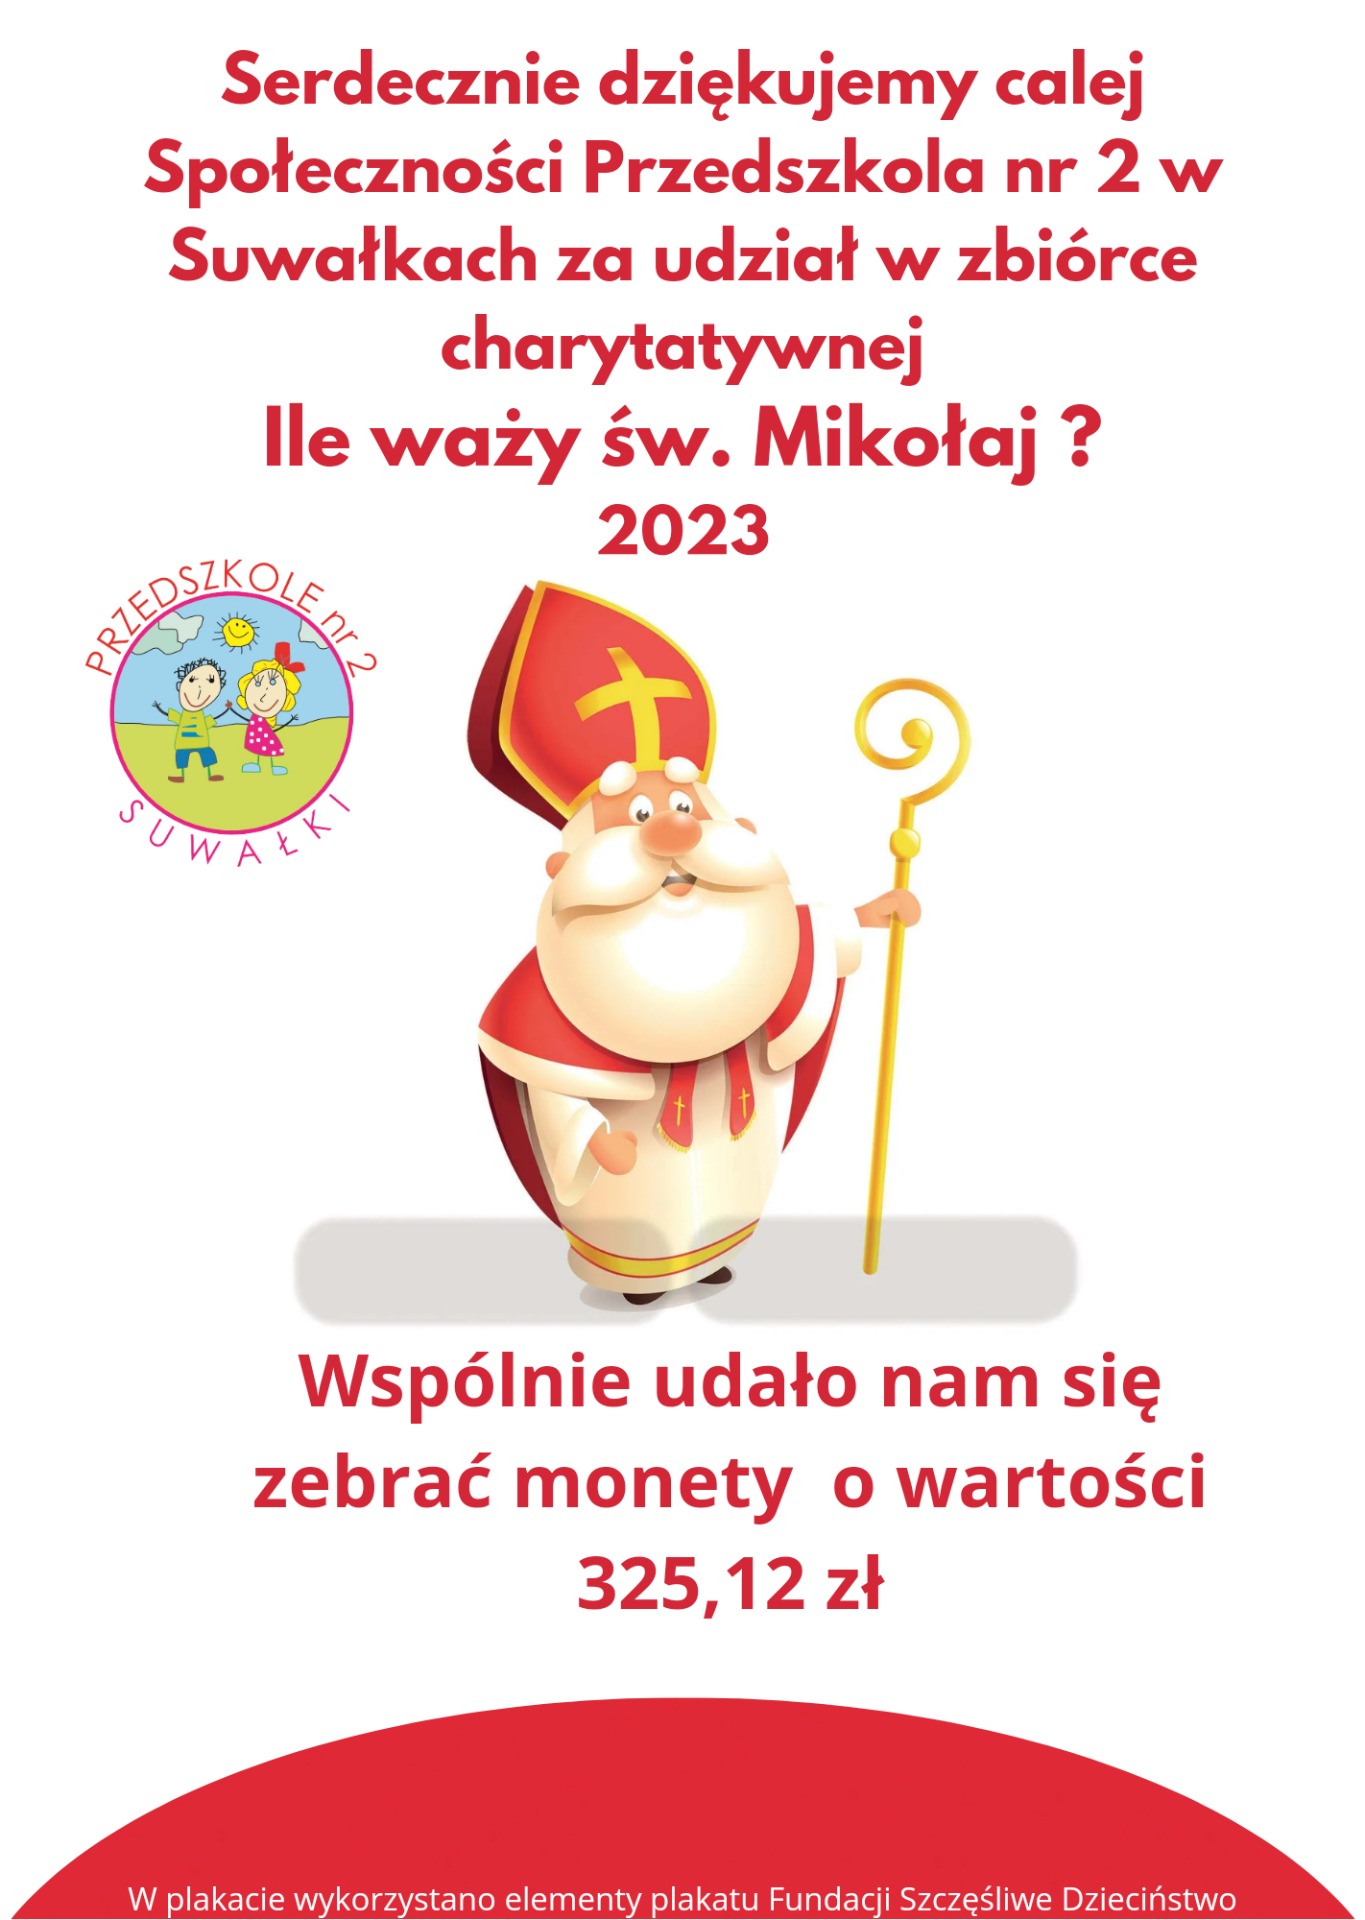 Koniec zbiórki monet w akcji charytatywnej "Ile waży św. Mikołaj?" - Obrazek 1